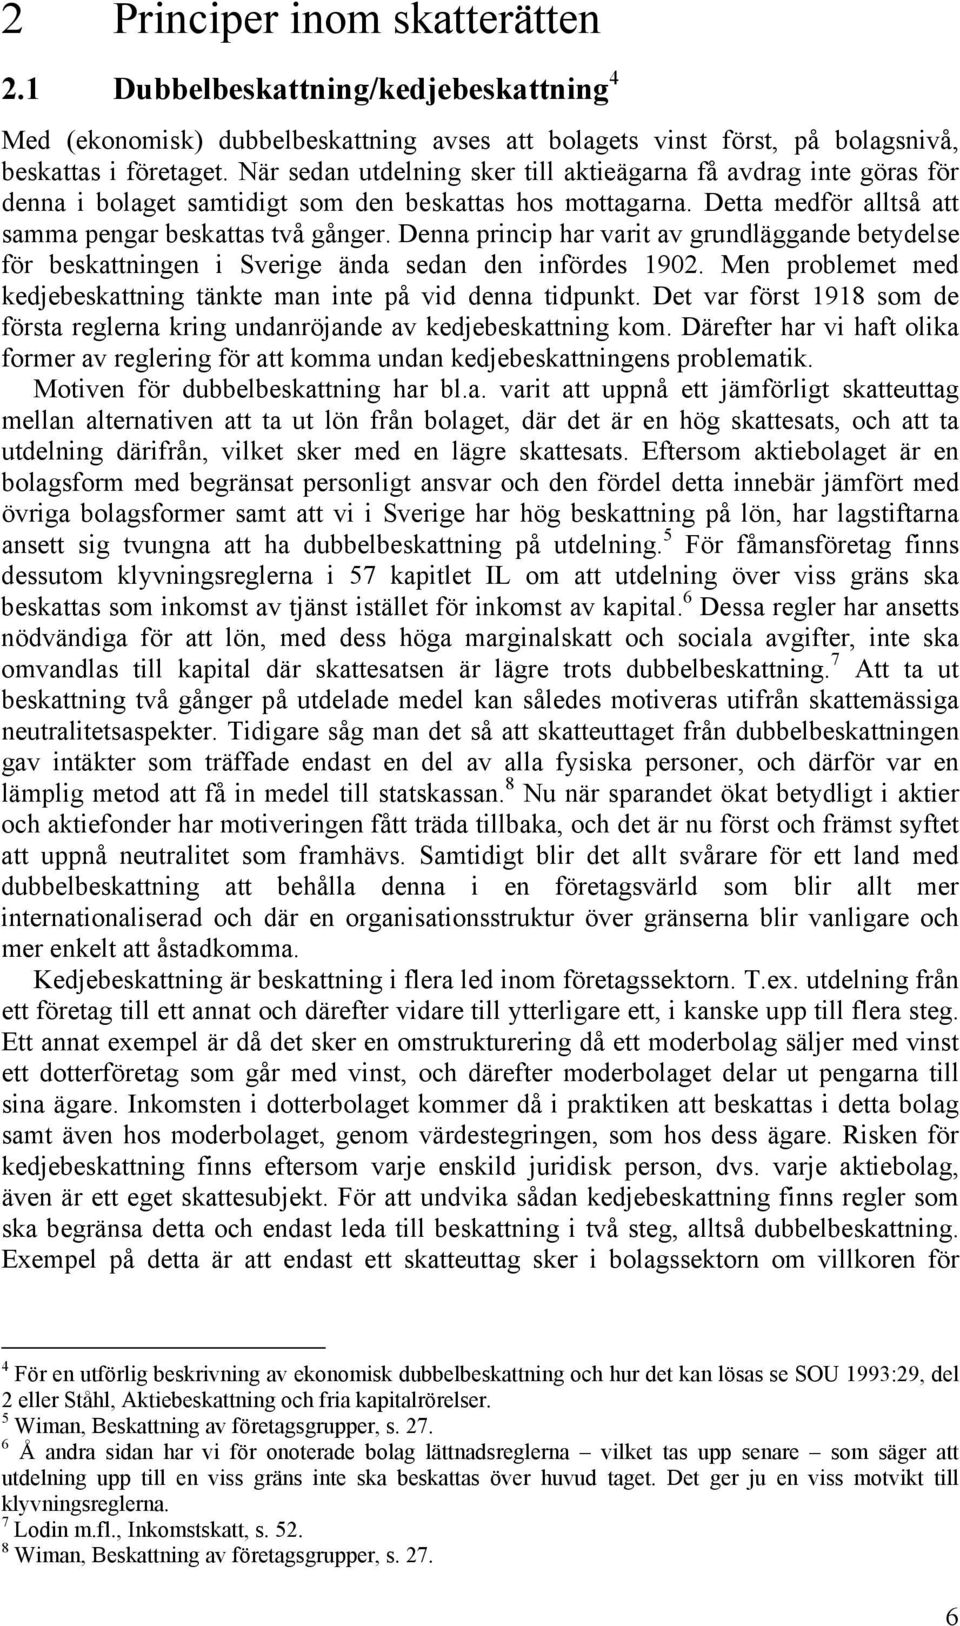 Denna princip har varit av grundläggande betydelse för beskattningen i Sverige ända sedan den infördes 1902. Men problemet med kedjebeskattning tänkte man inte på vid denna tidpunkt.